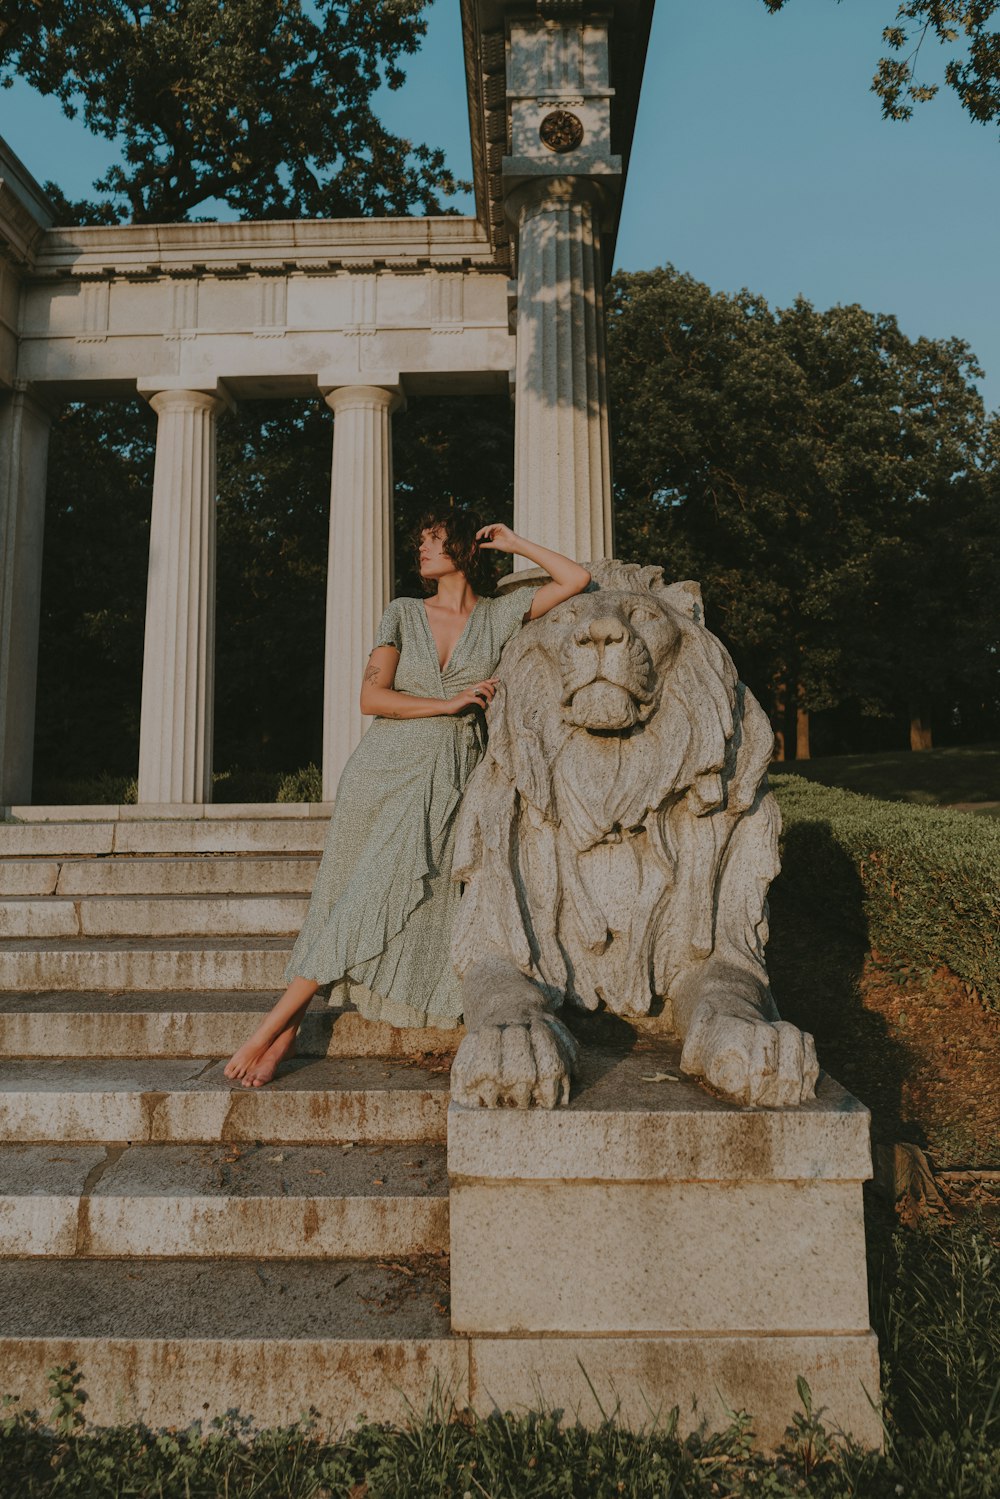 石のライオン像の上に座っている女性